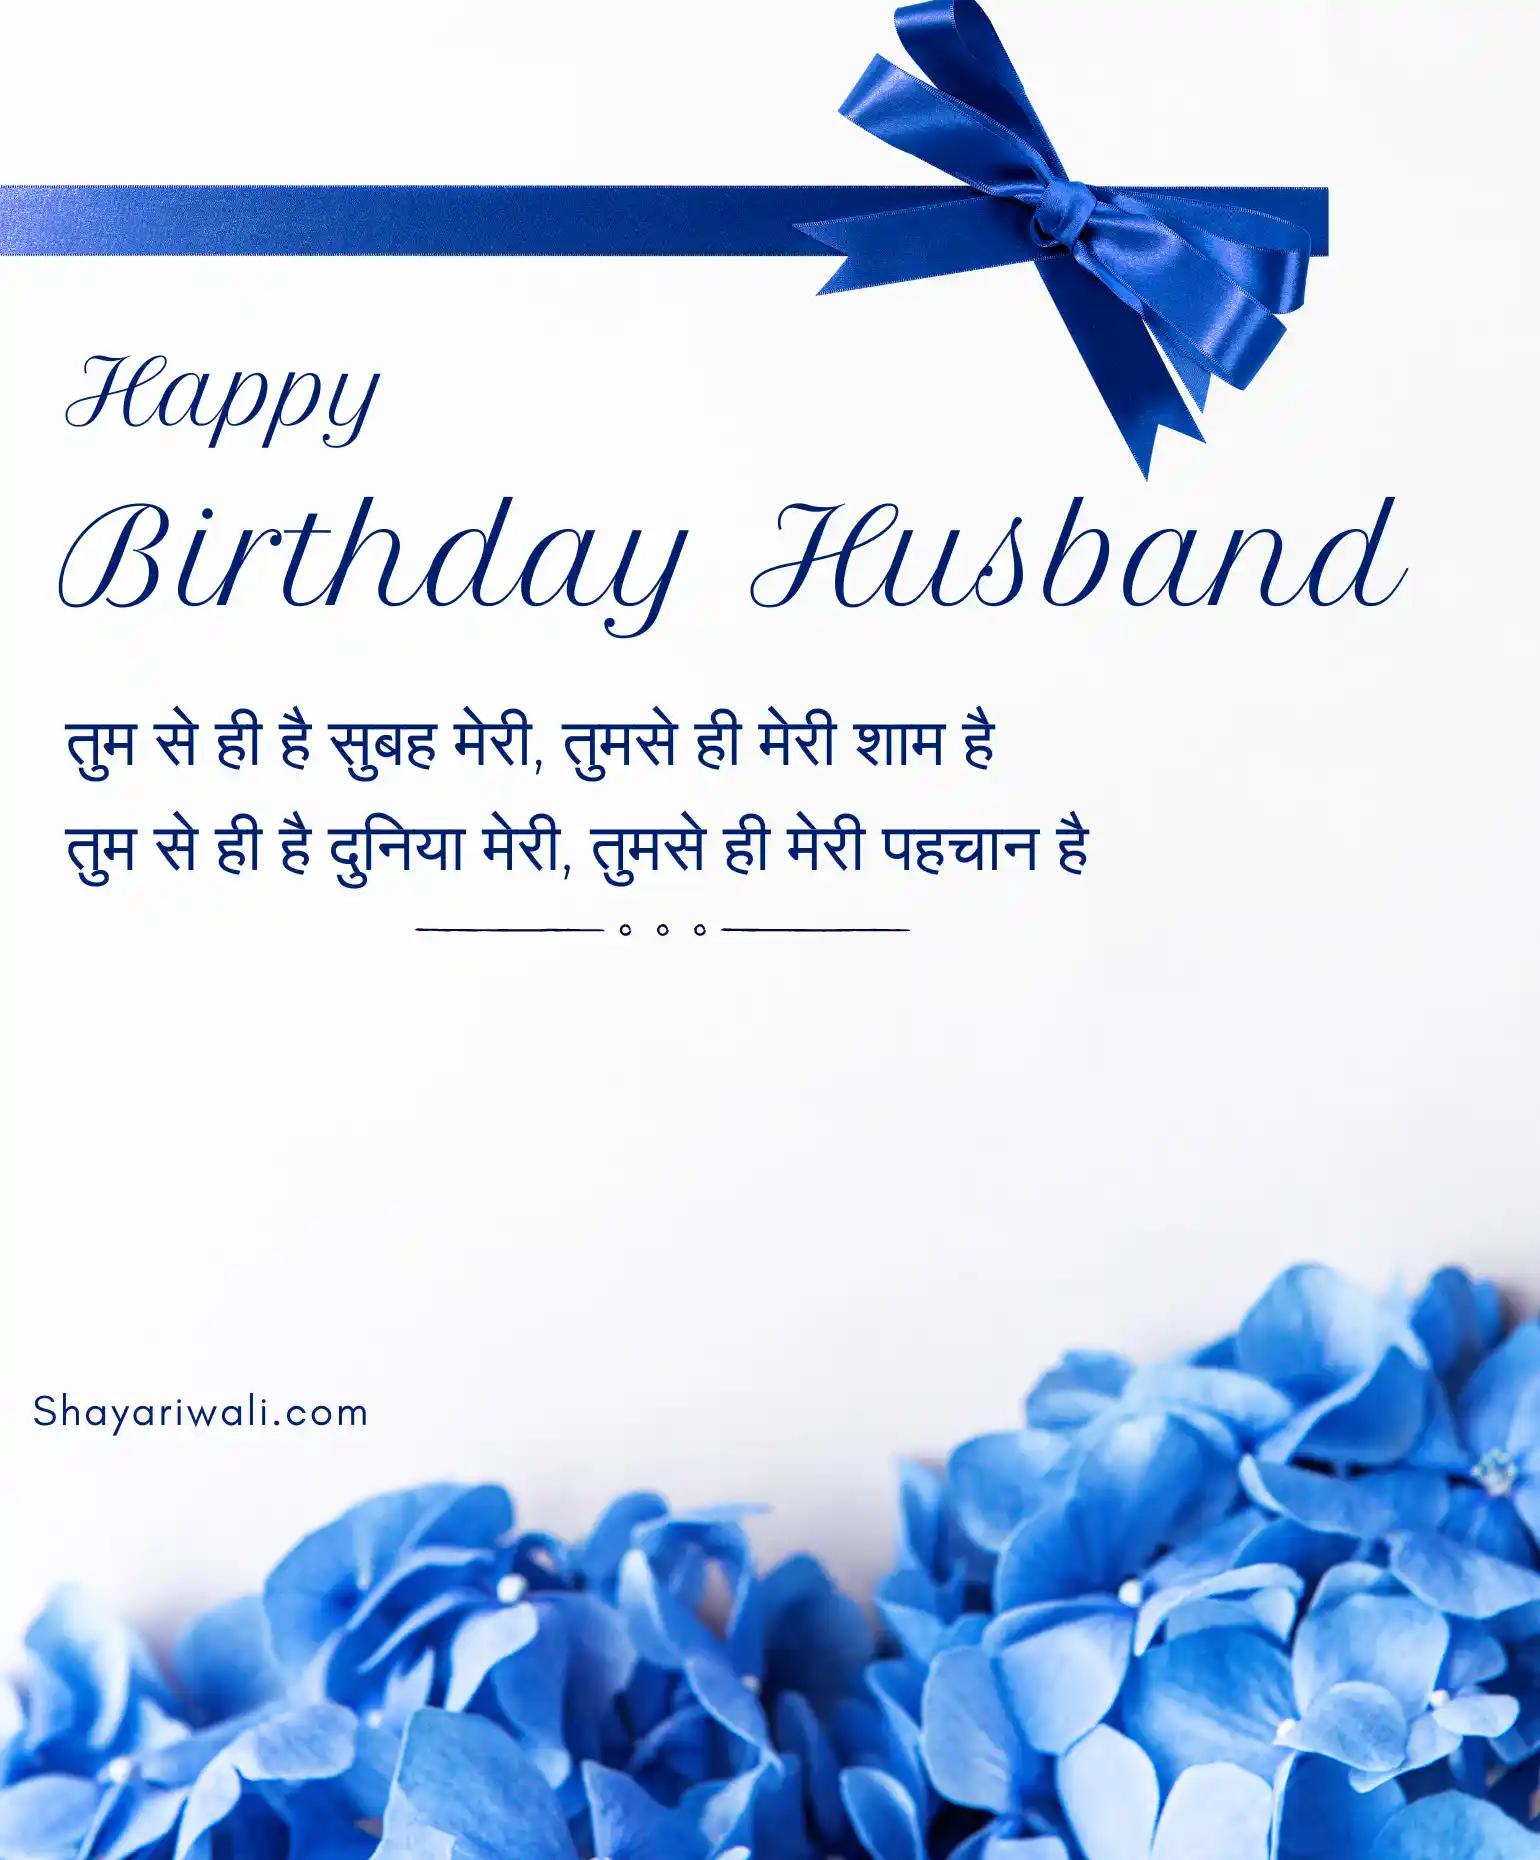 Husband Birthday Shayari Shayariwali.com